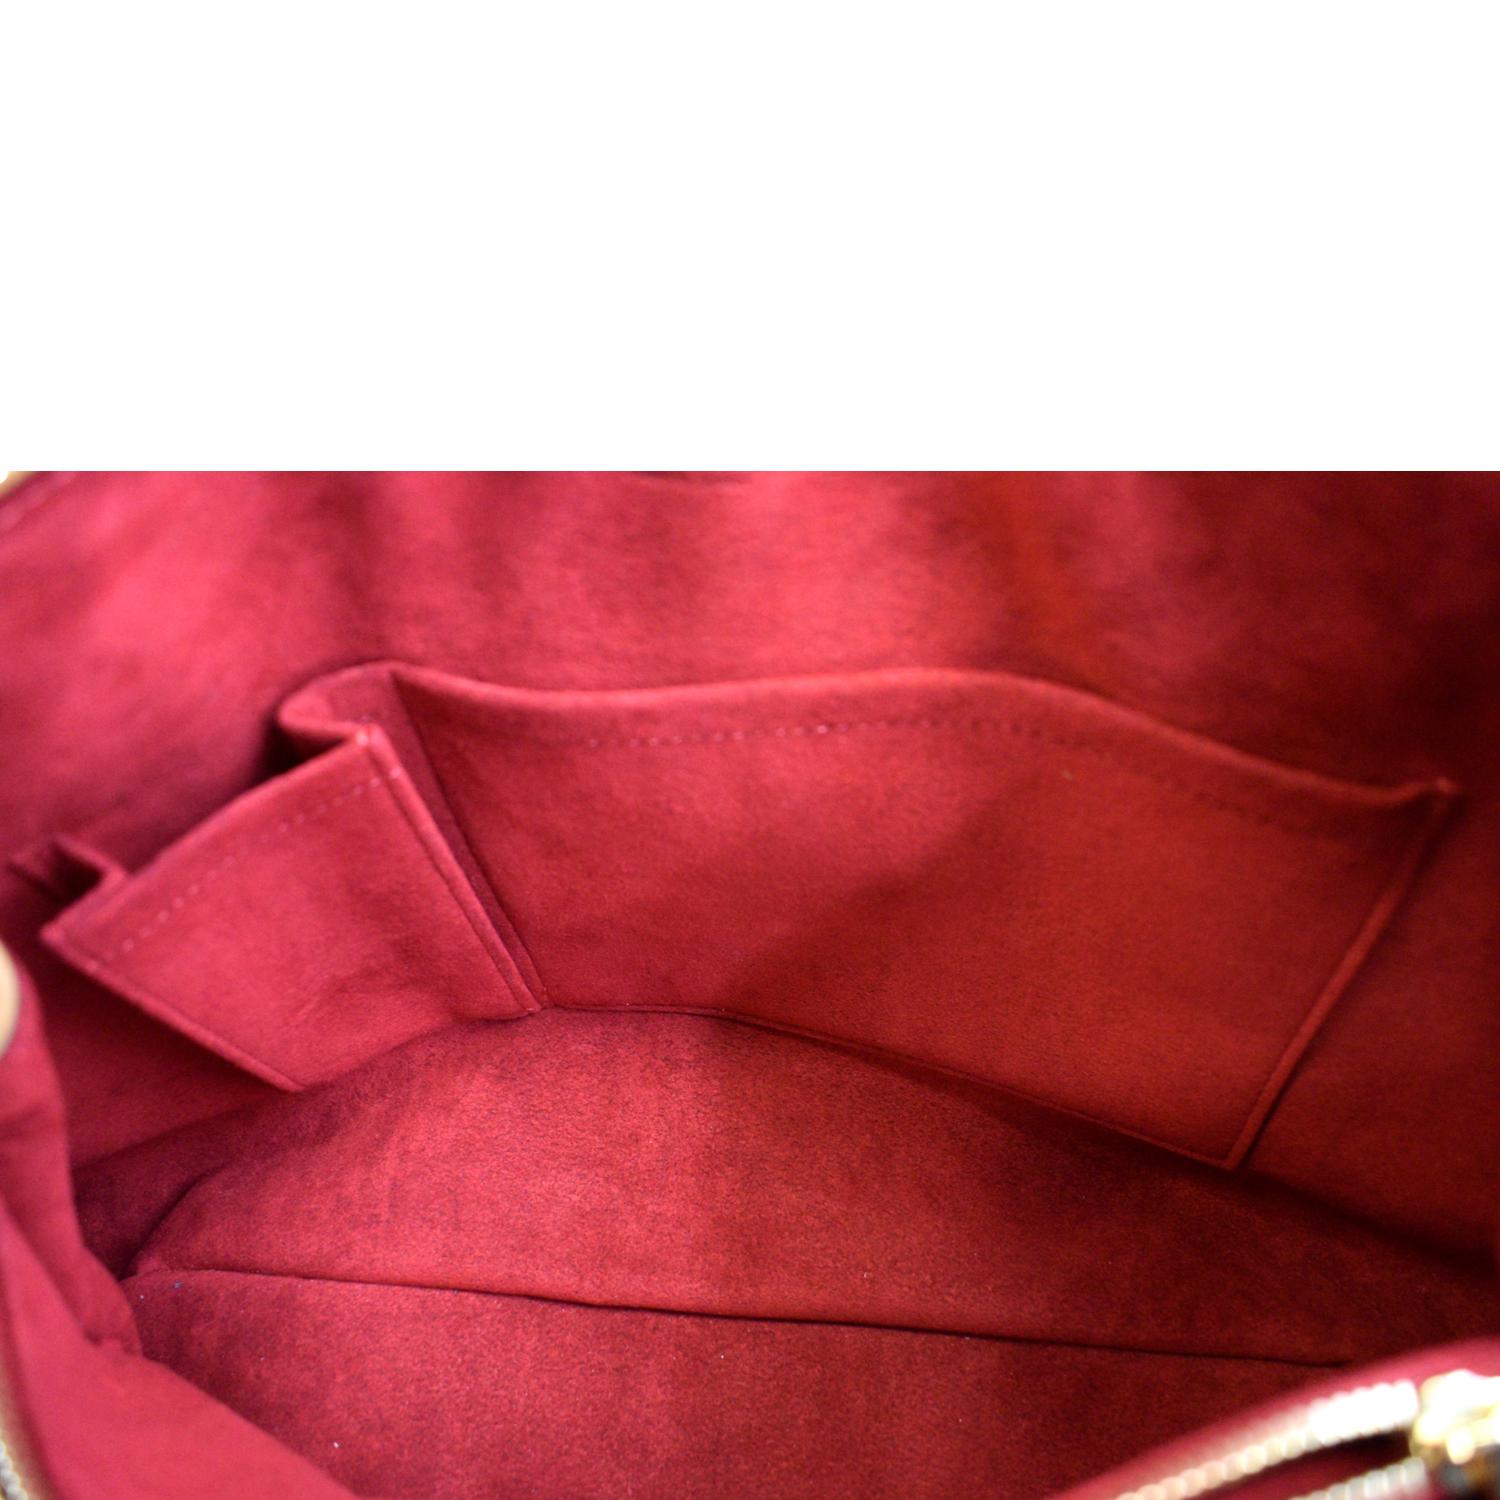 Louis Vuitton Damier Ebene Canvas Leather Griet Shoulder Bag